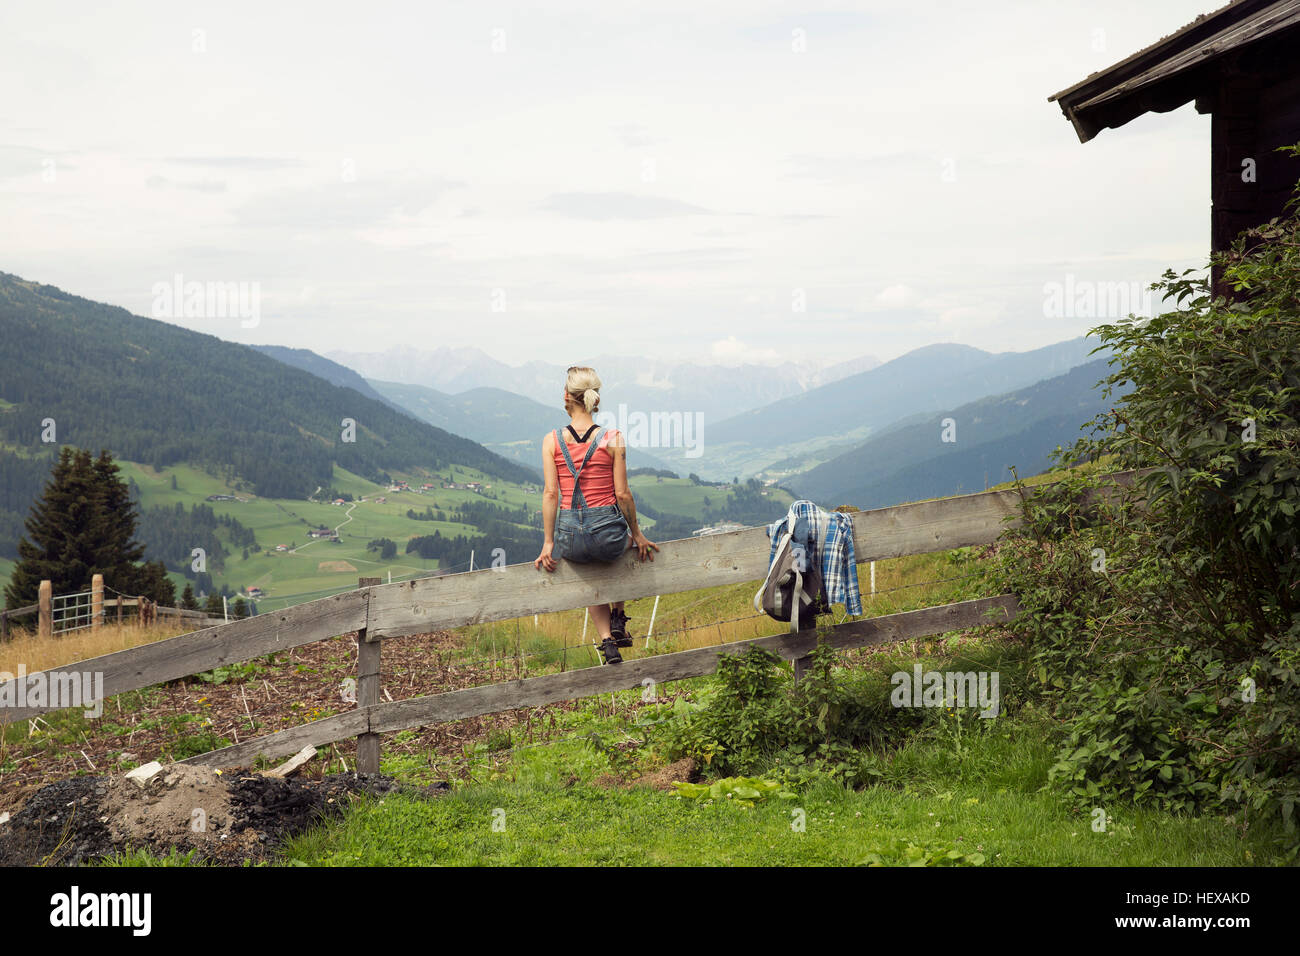 Rear view of woman sitting on fence donnant sur paysage de montagne, Sattelbergalm, Tyrol, Autriche Banque D'Images